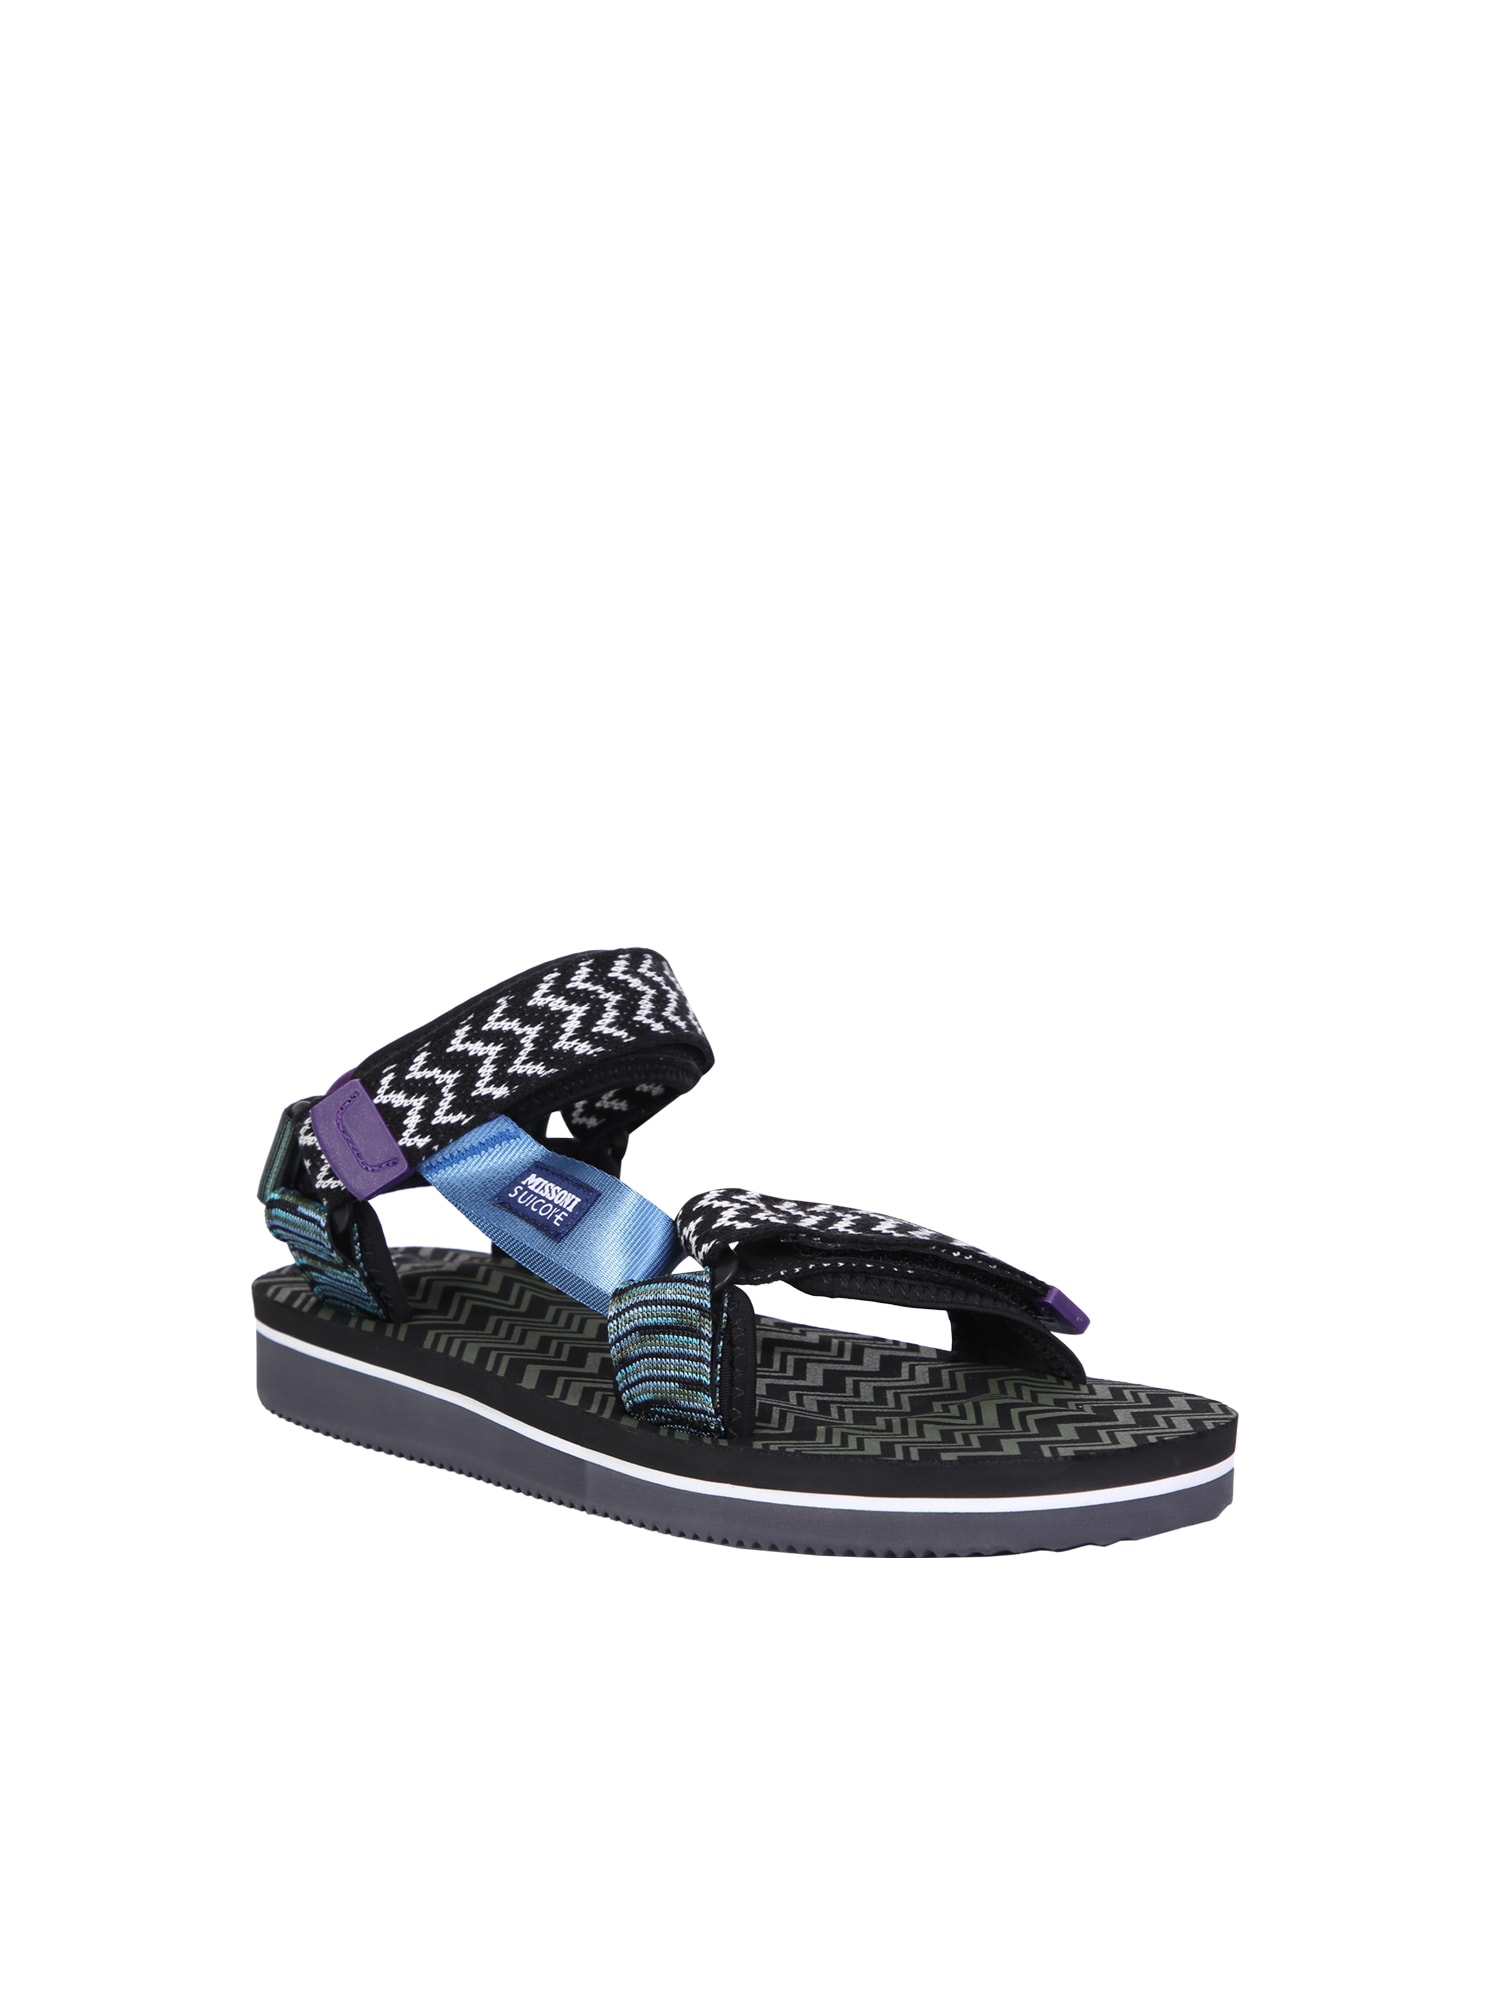 Shop Suicoke Sandals X Missoni Depa-msn-var1 Black